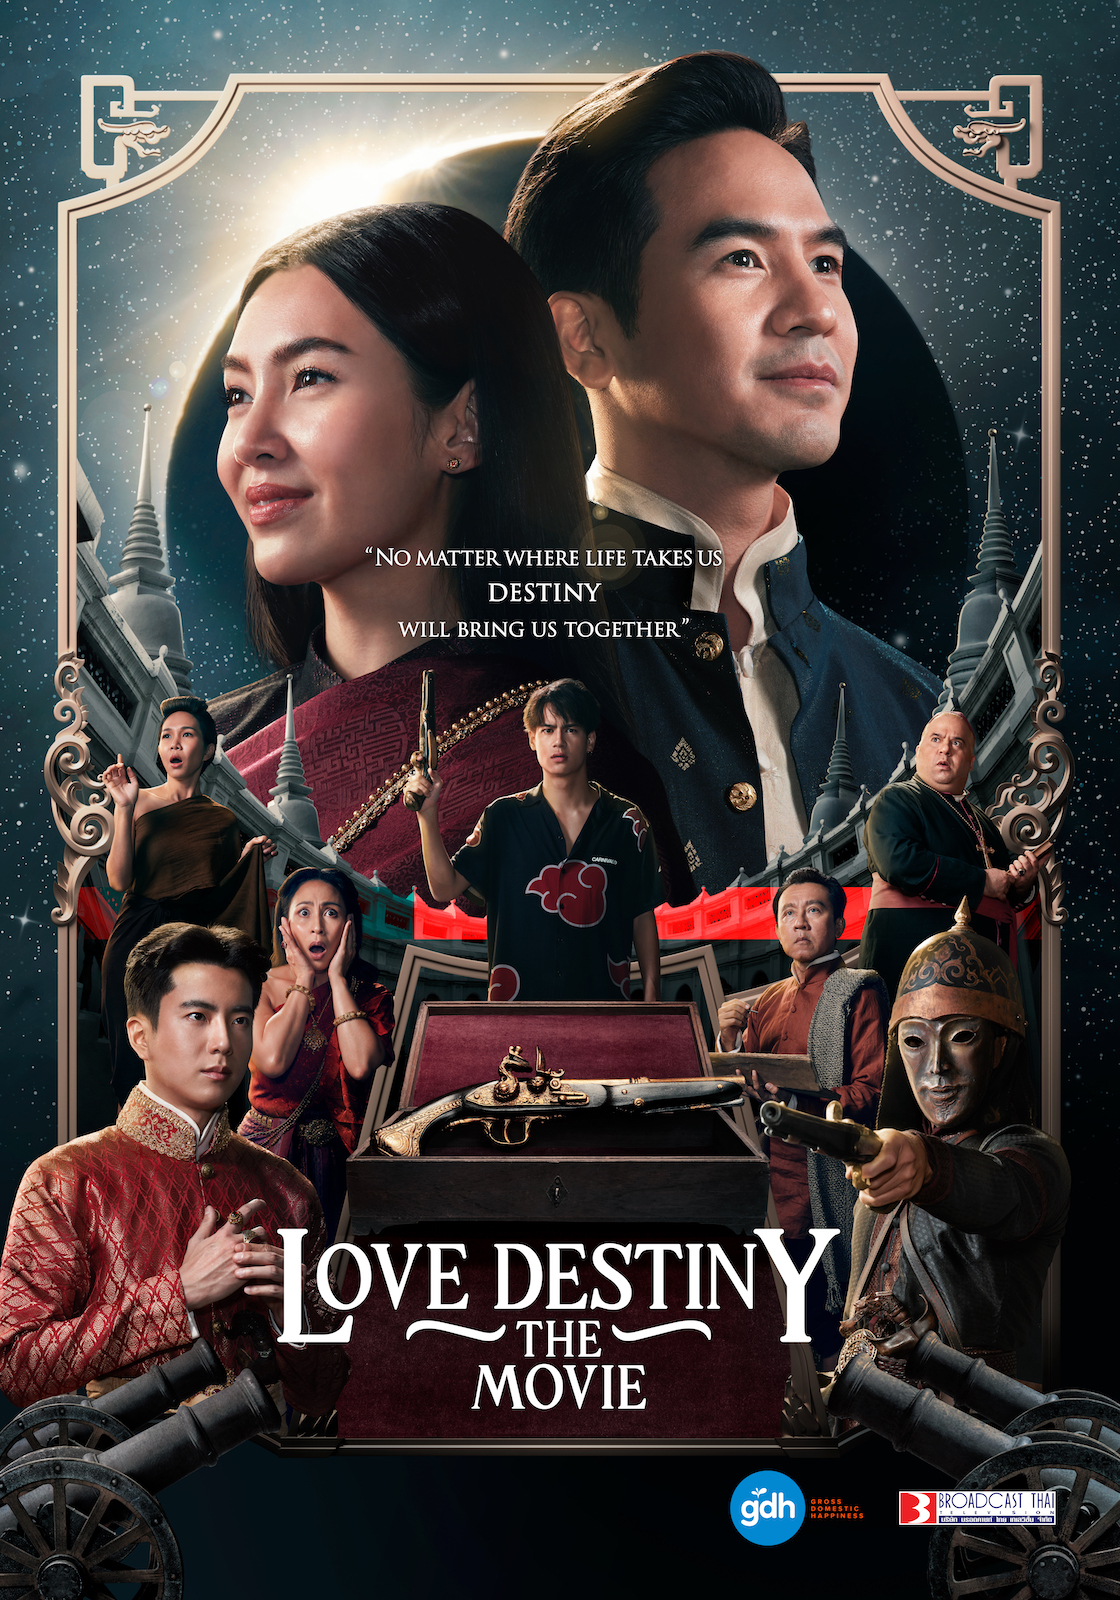 ดูหนังออนไลน์ฟรี ดูหนังออนไลน์ บุพเพสันนิวาส 2 LOVE DESTINY THE MOVIE 2022 movie678